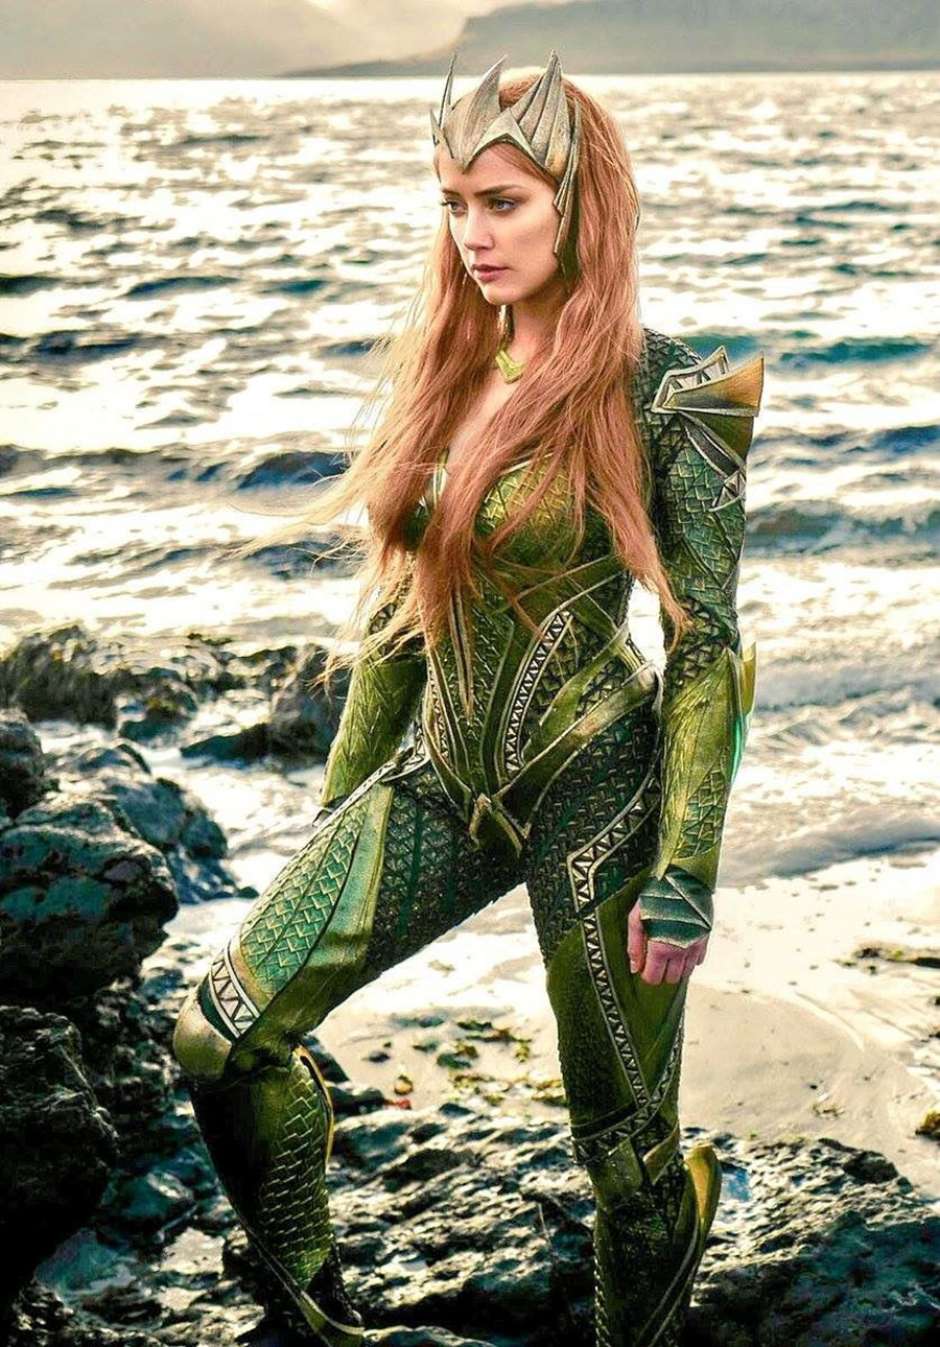 Petição para tirar Amber Heard de novo Aquaman atinge 3 milhões de  assinaturas - Gazeta de São Paulo